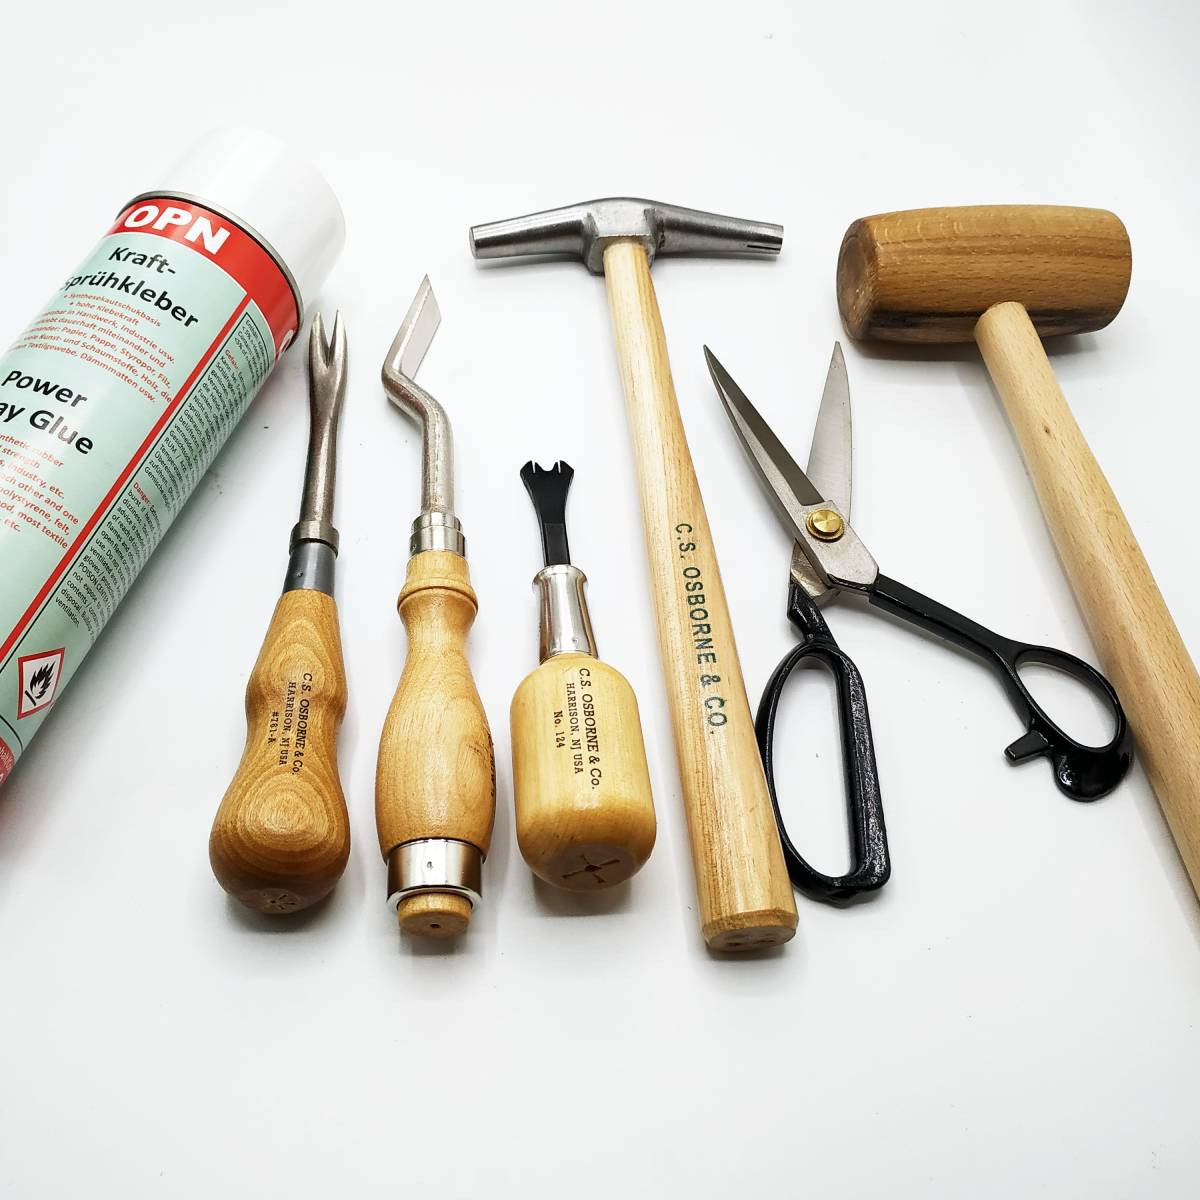 Kit outils pour garnissage de mousse - Fiche technique